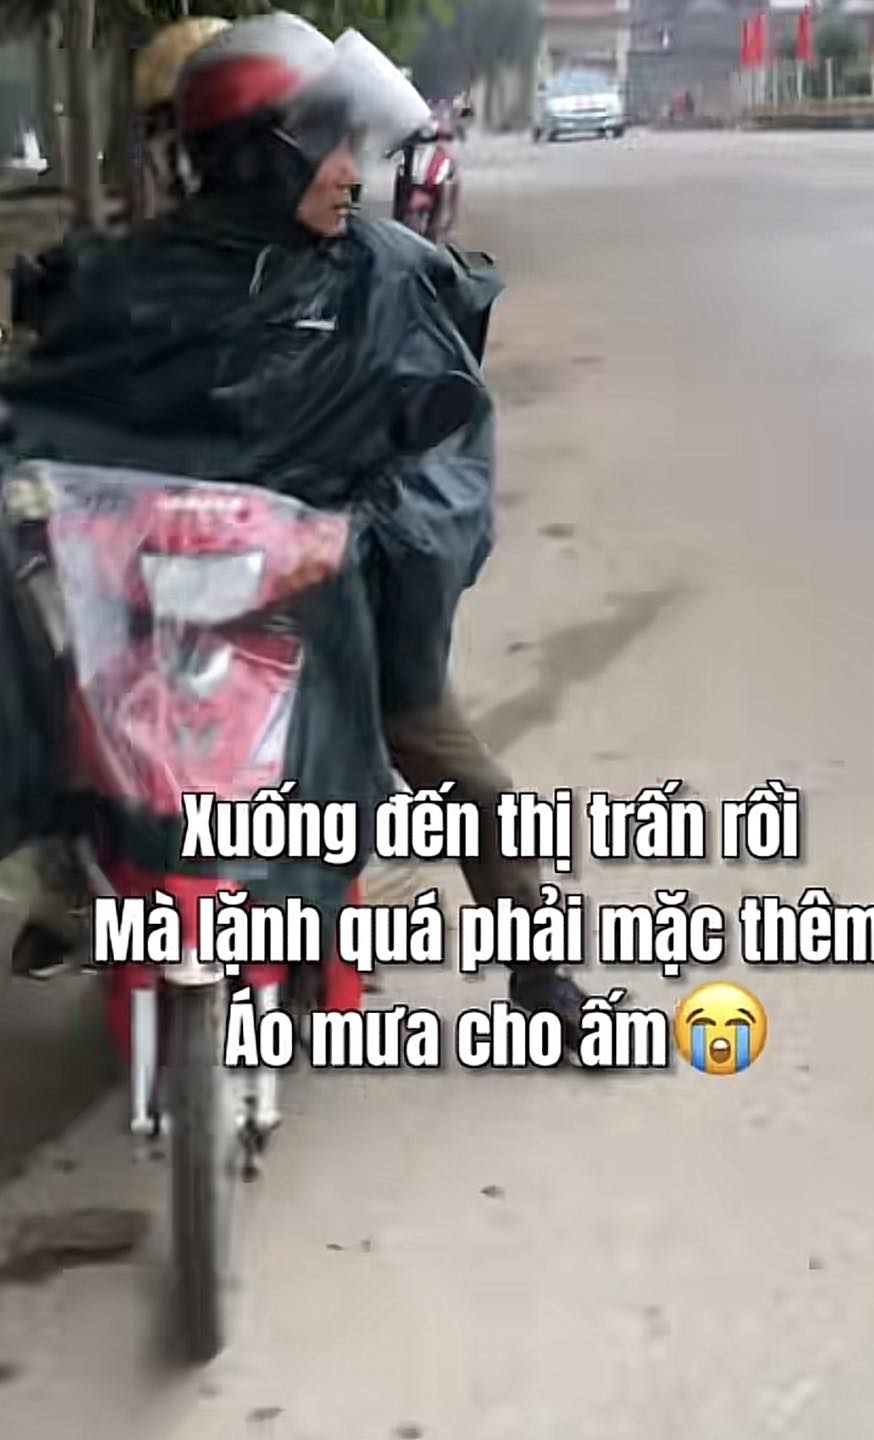 Nam thanh niên ở Nghệ An 'lừa' cha đi tận 20km mà khiến cộng đồng mạng rưng rưng nước mắt